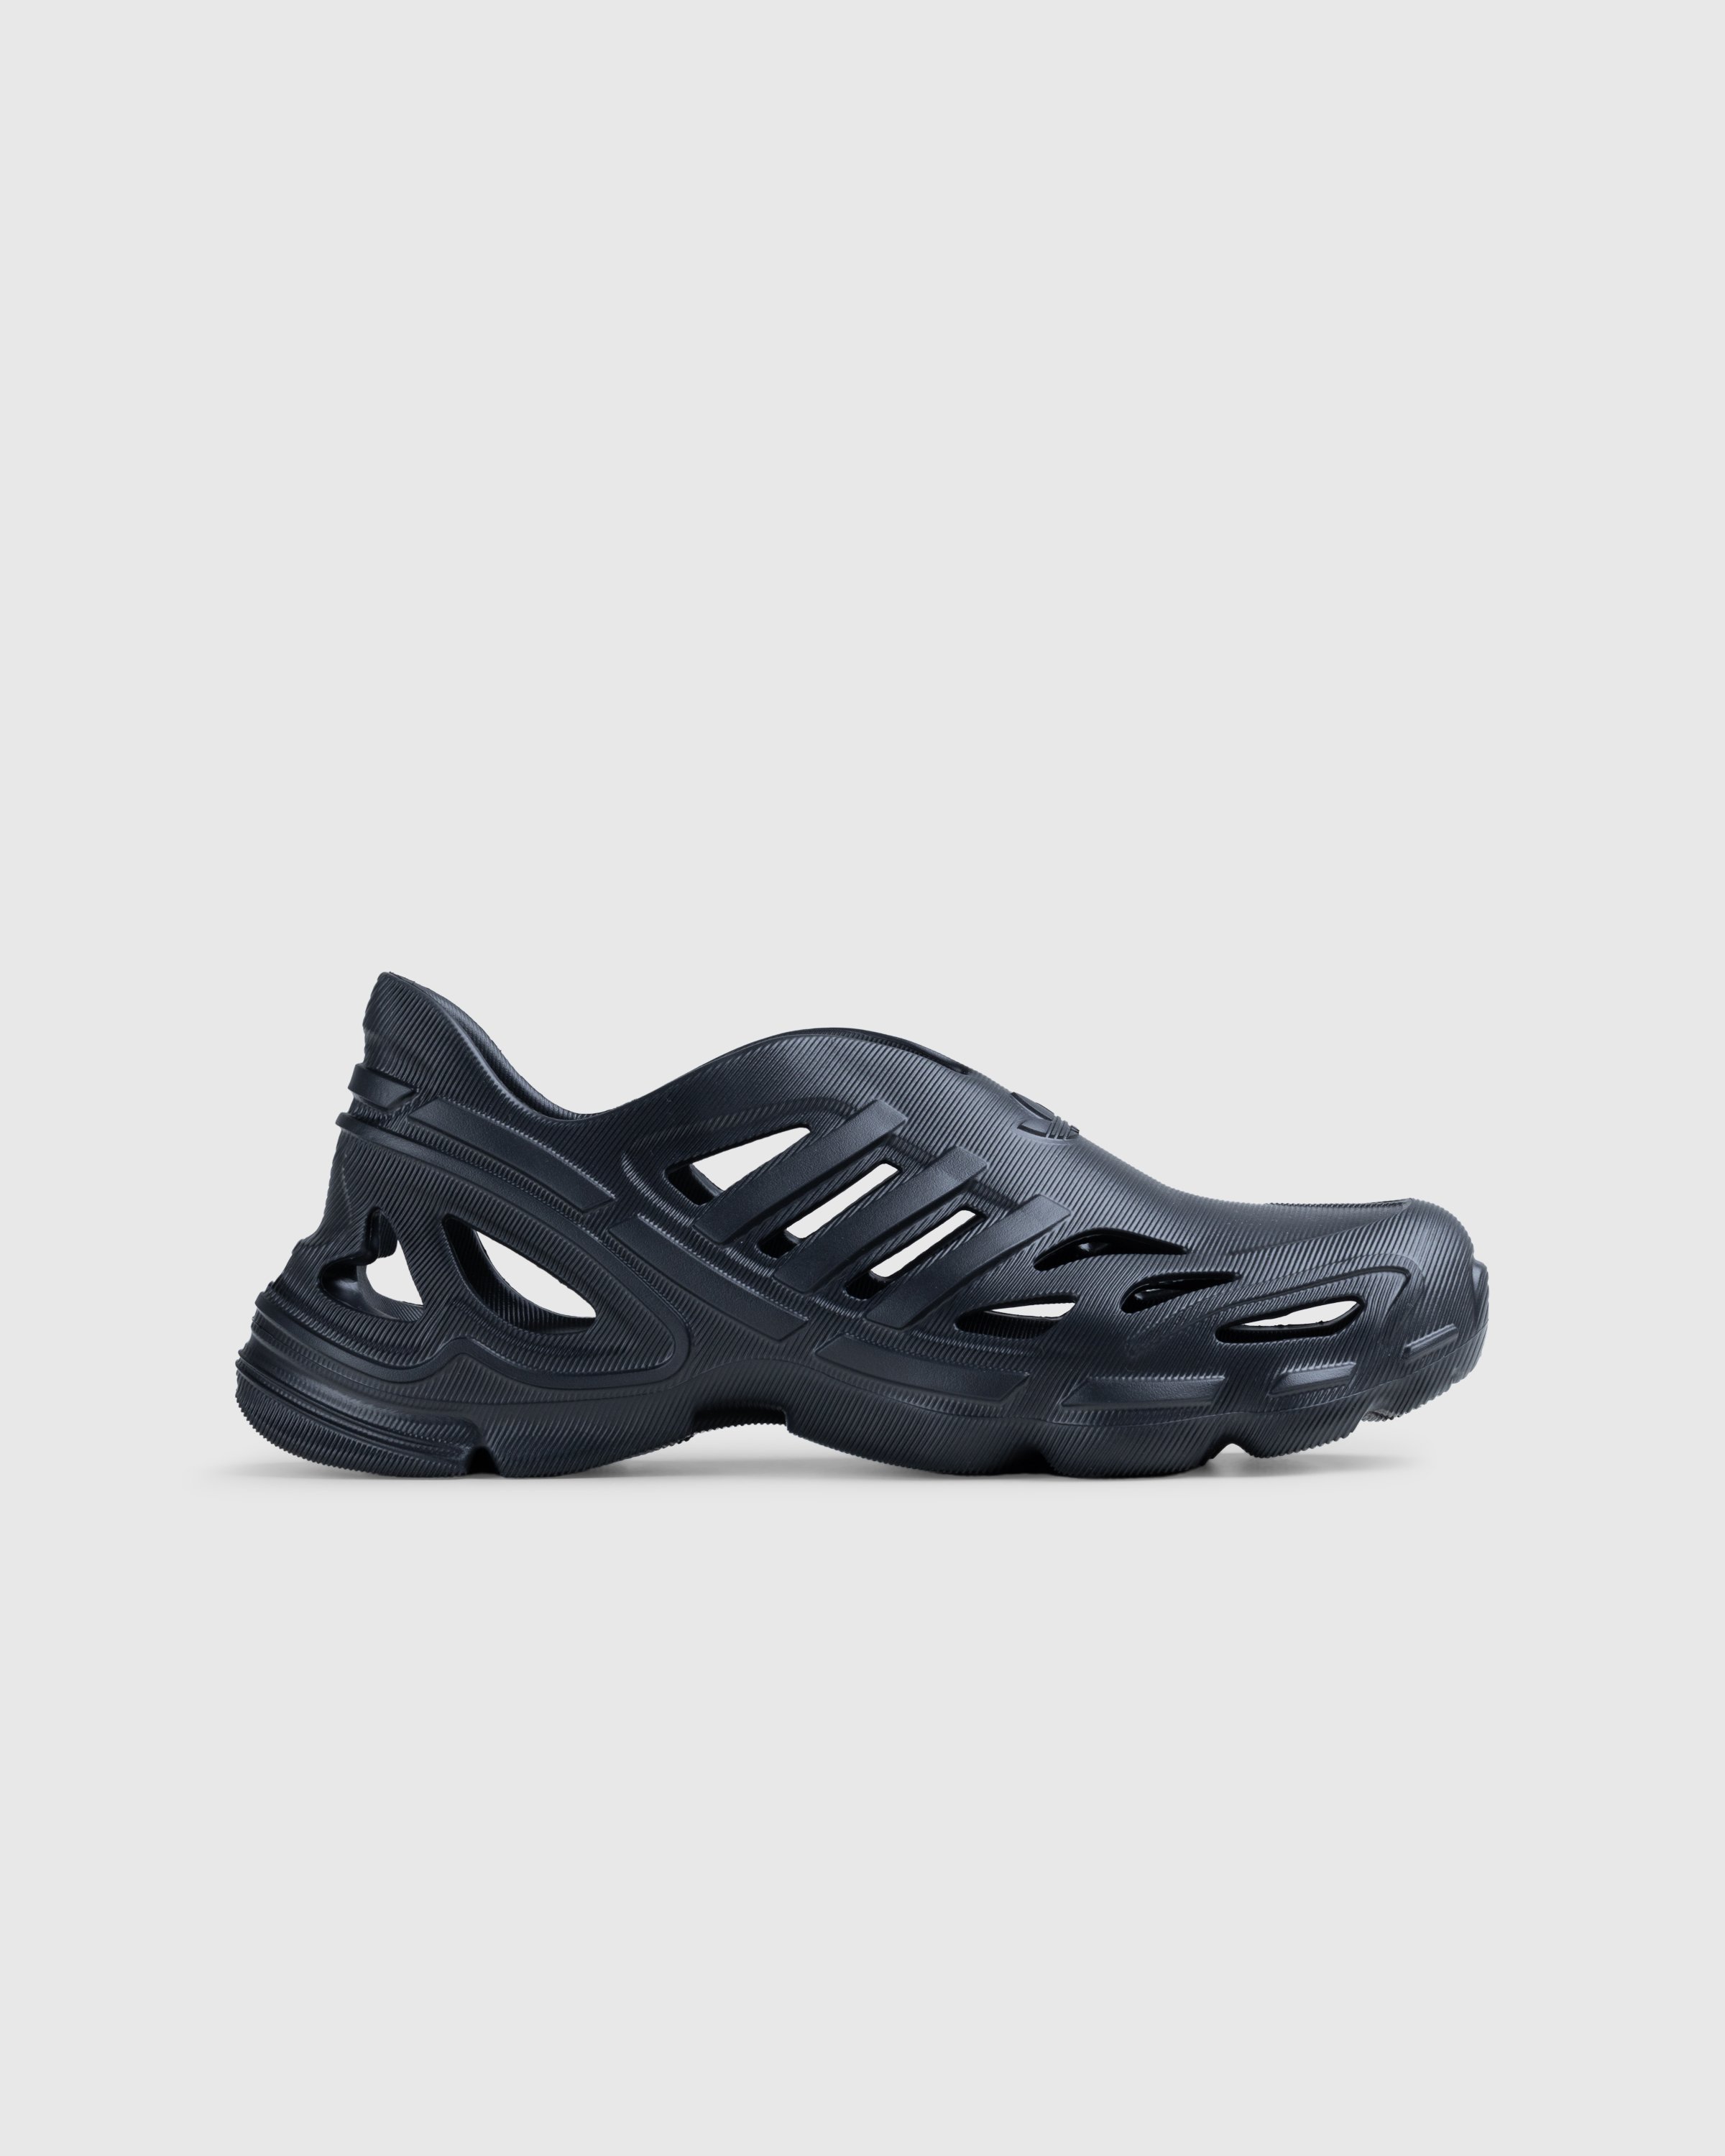 Adidas - Adifom Supernova Core Black - Footwear - Black - Image 1